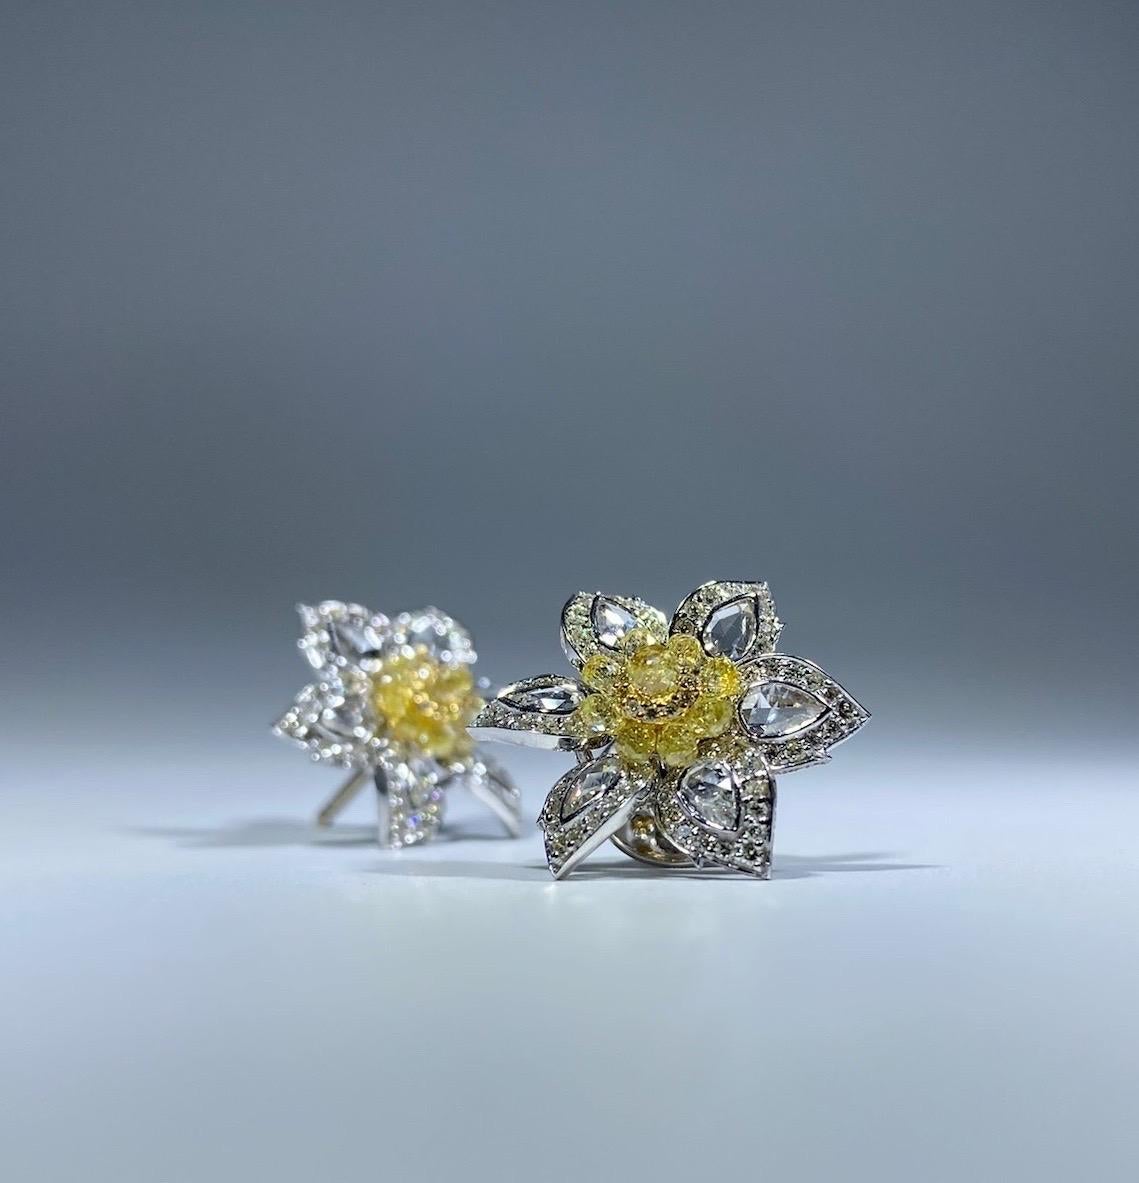 Nous vous présentons notre exquise boucle d'oreille Flower Rose Cut Diamond et 4,08 carats Fancy Yellow Briolette, un véritable chef-d'œuvre de sophistication et d'élégance. Ces superbes boucles d'oreilles sont une magnifique fusion de diamants